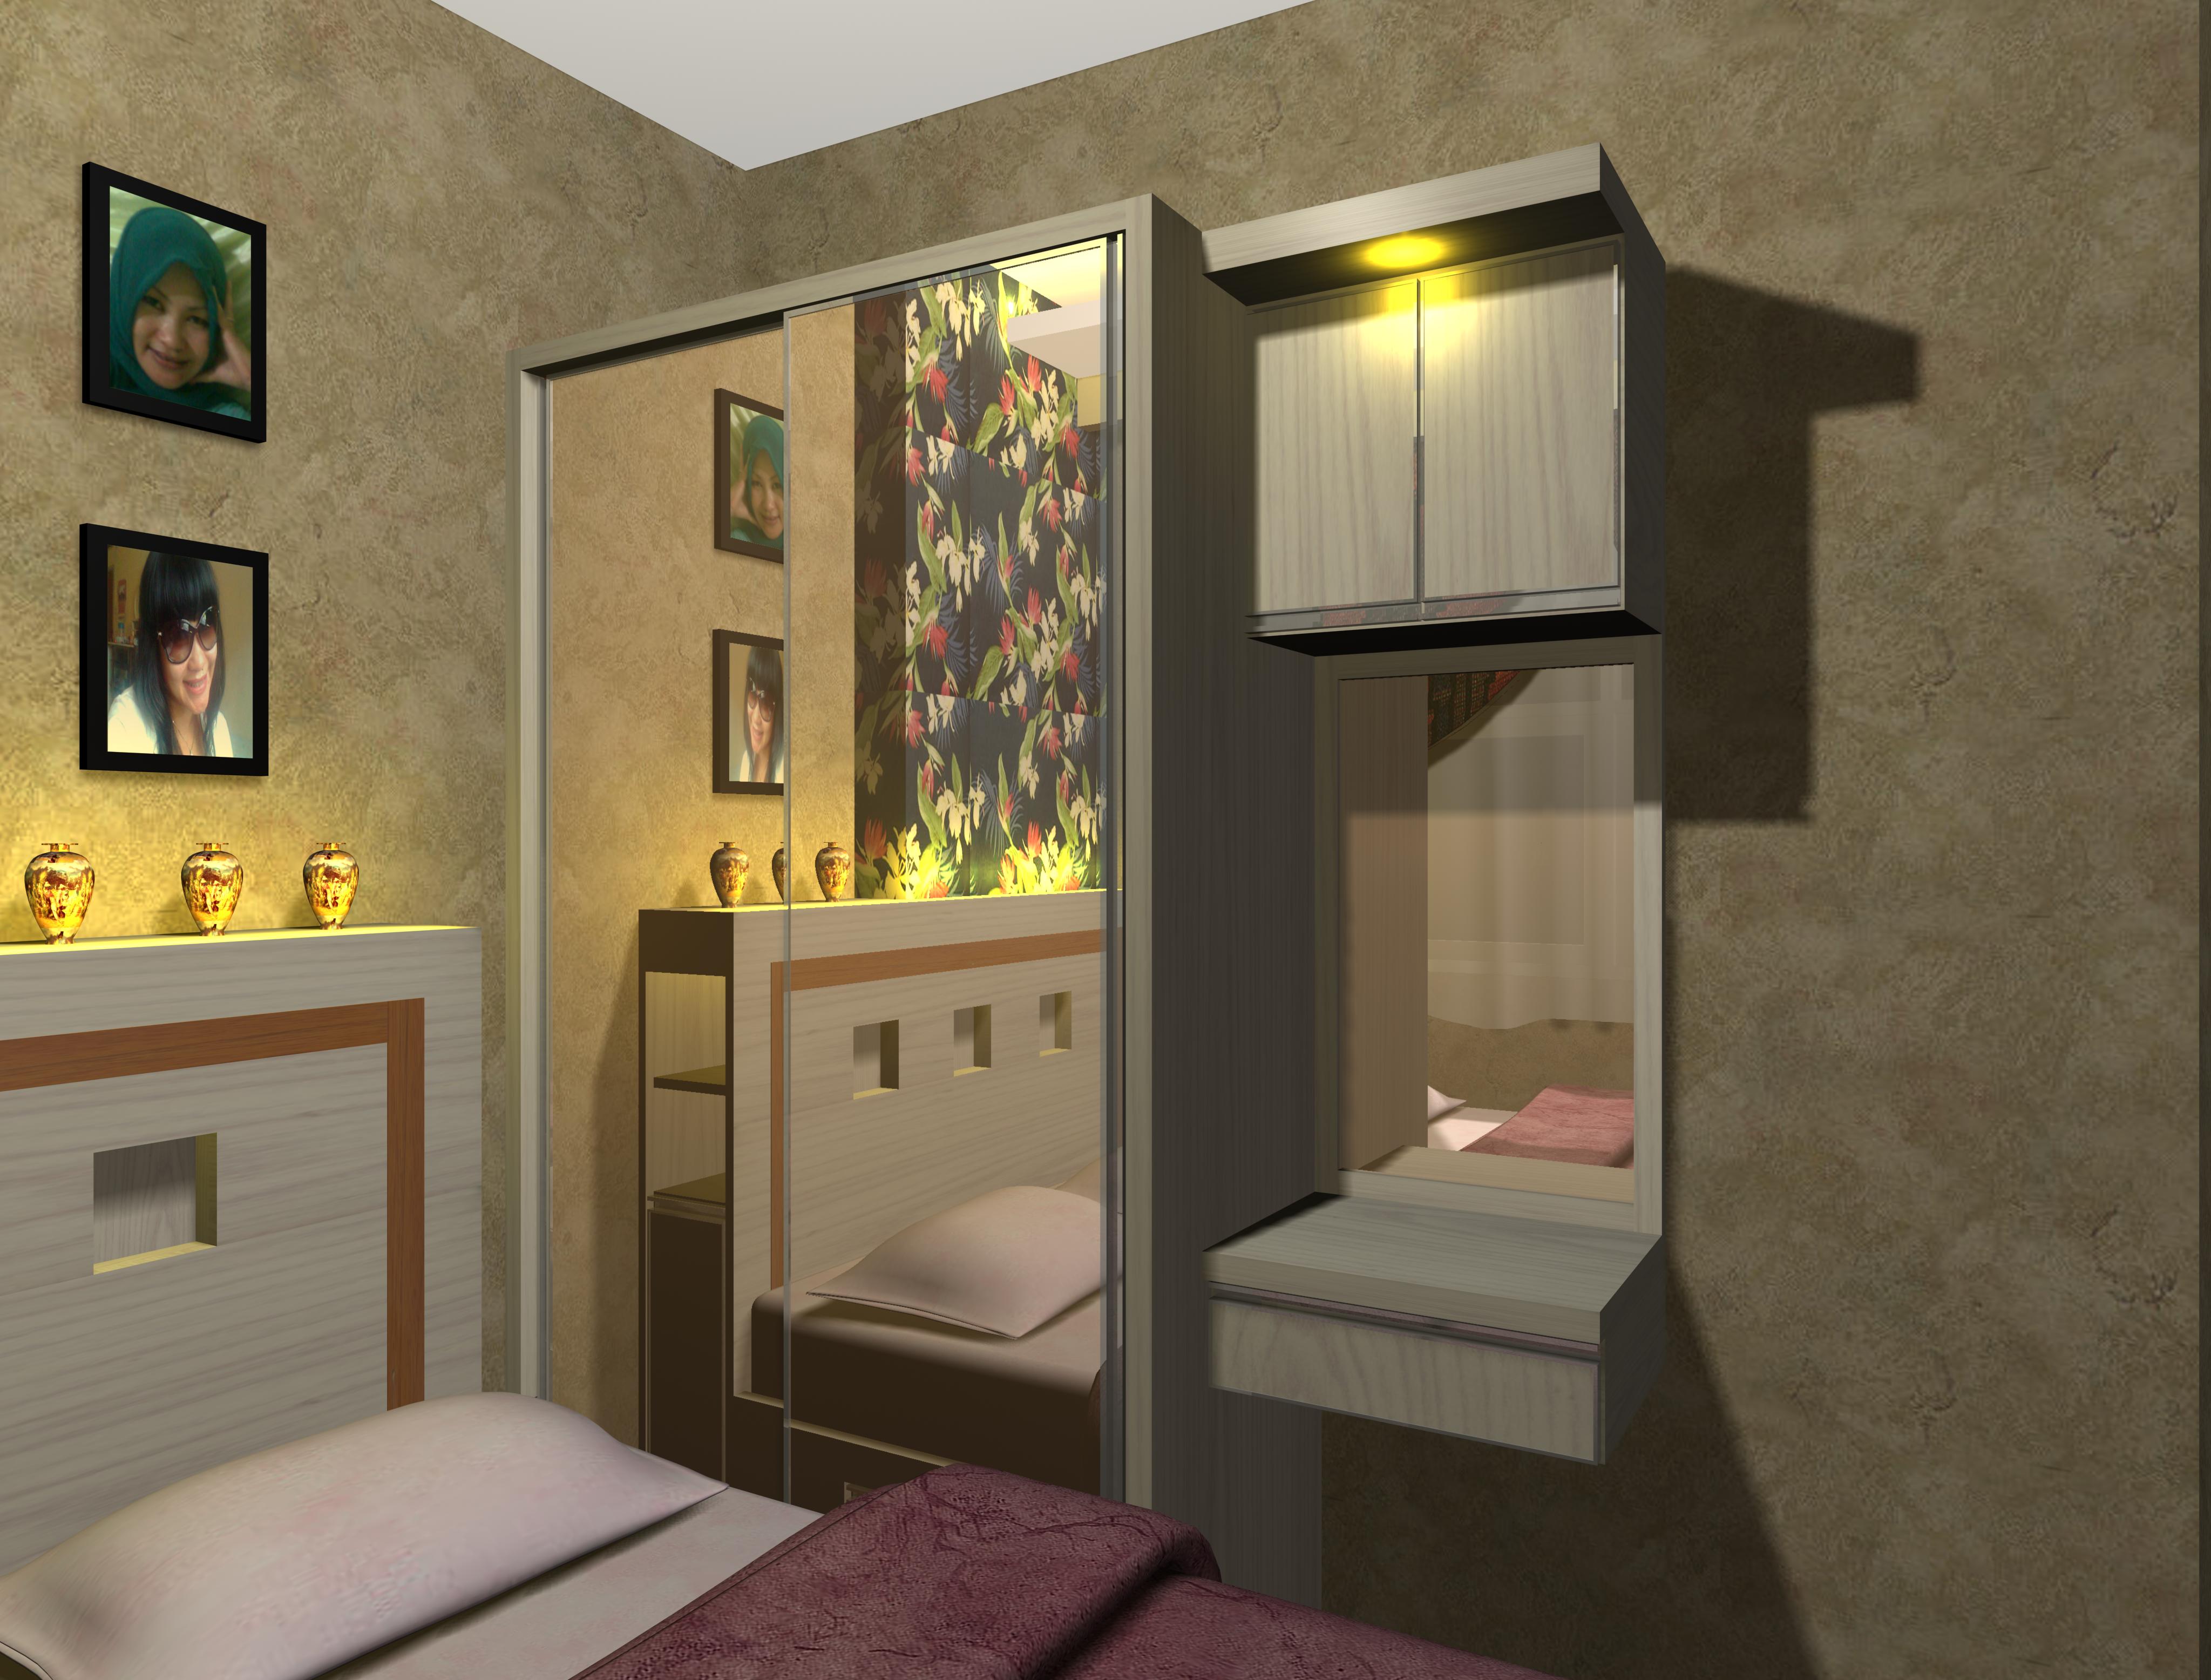 Desain Apartemen Kecil 2 Kamar Gambar Desain Rumah Minimalis